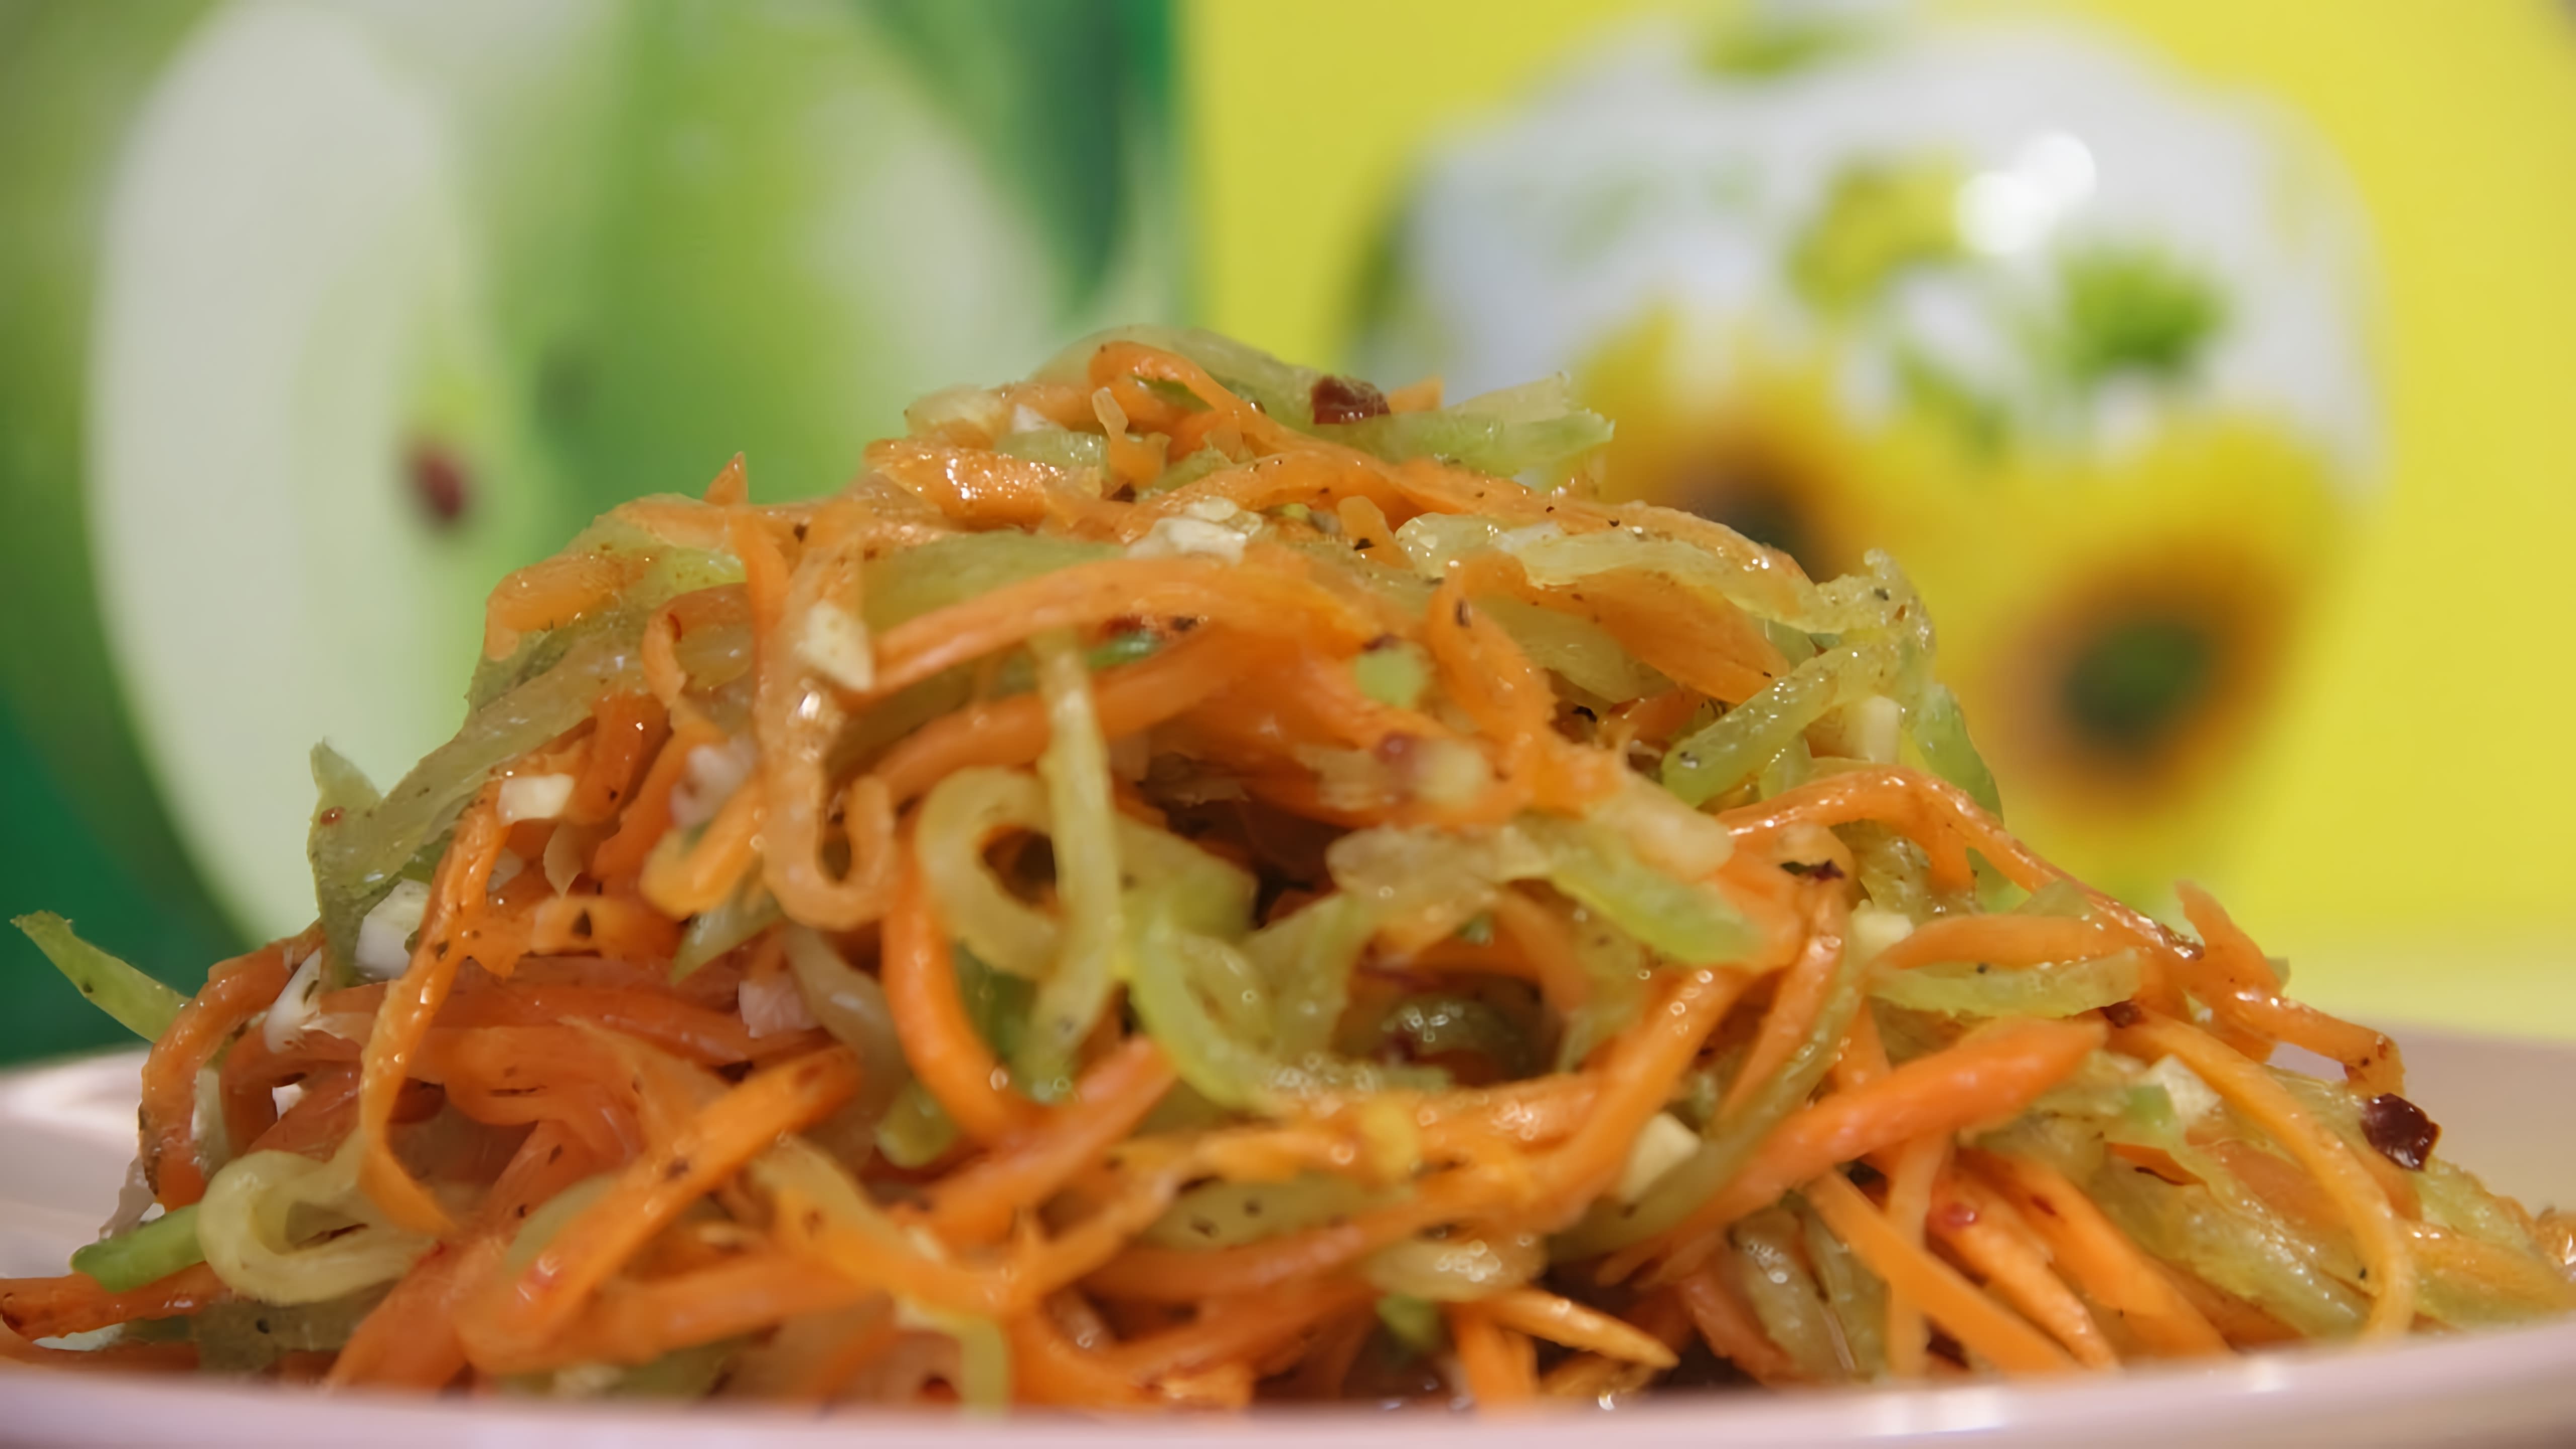 В этом видео демонстрируется процесс приготовления корейского салата из моркови с зеленой редькой